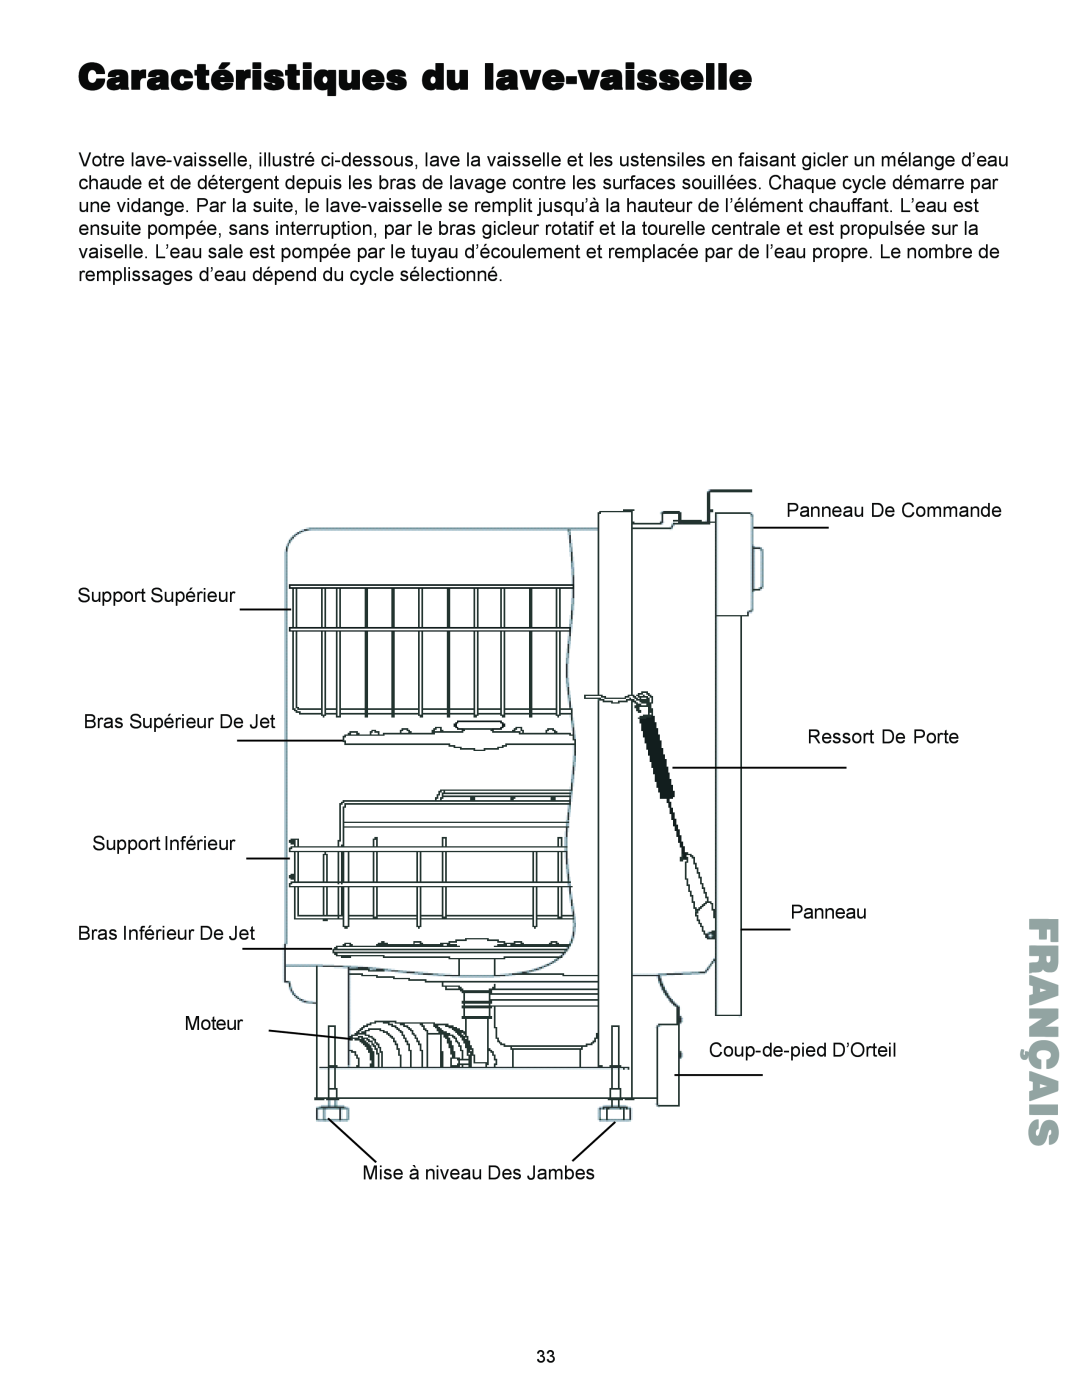 Kenmore 587.1441 manual Caractéristiques du lave-vaisselle, Français 